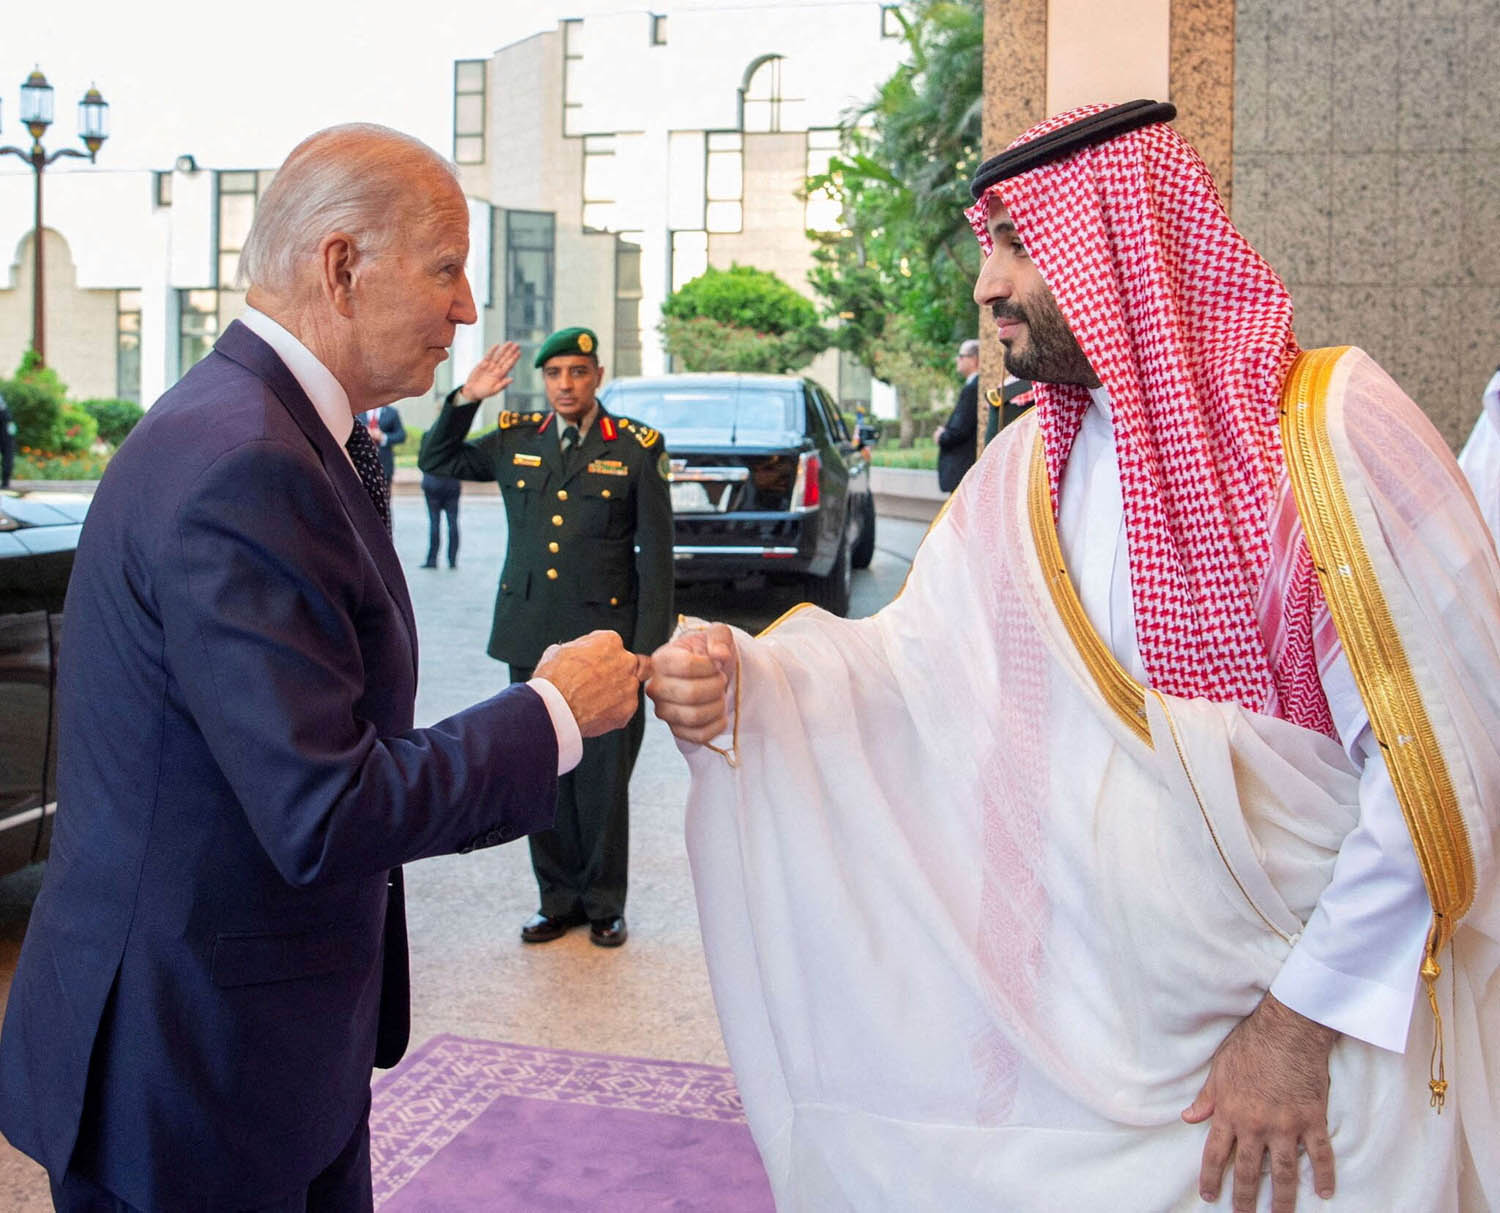 مصافحة بالقبضات بين الرئيس الأميركي جو بايدن وولي العهد السعودي الأمير محمد بن سلمان